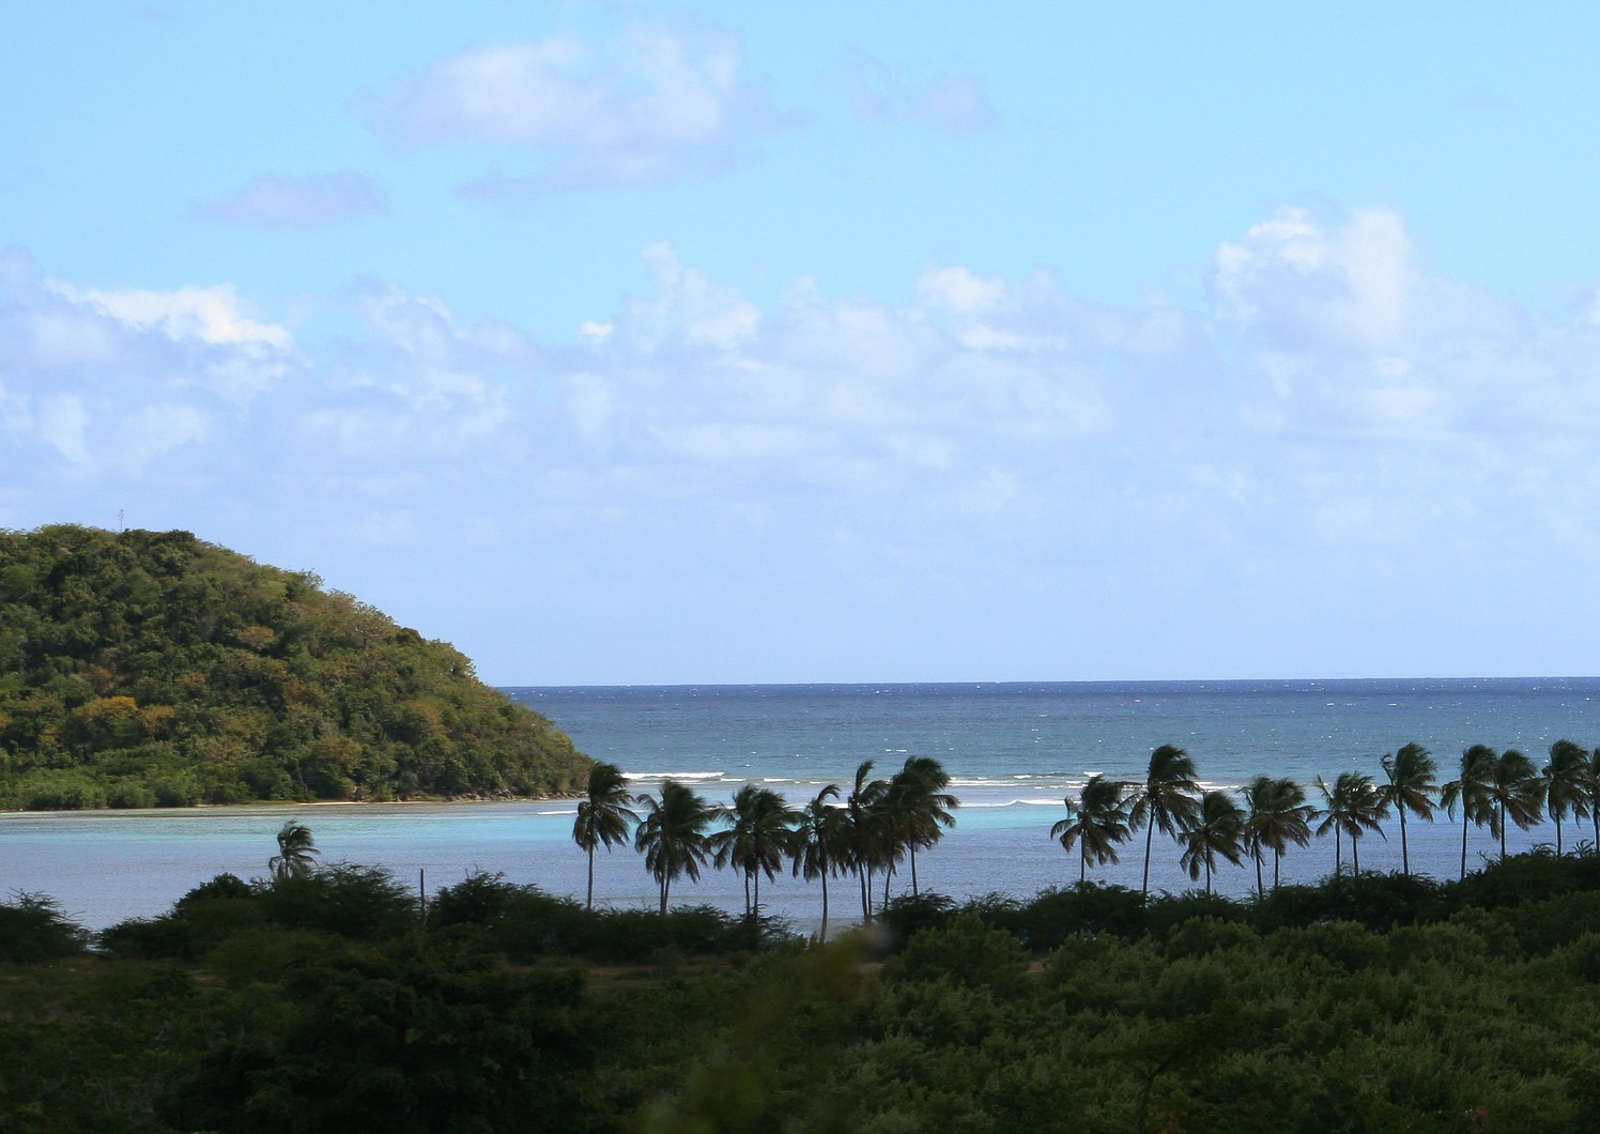 Antigua Travel Guide - Reisebericht - Kleine Antillen - Karibik Reise - Sehenswertes und Wissenswertes über die Insel - Reise Tipps - Must Sees und Sehenswürdigkeiten - Traumstrände in der Karibik - Fashionladyloves by Tamara Wagner Travel Blog - Reiseblogger